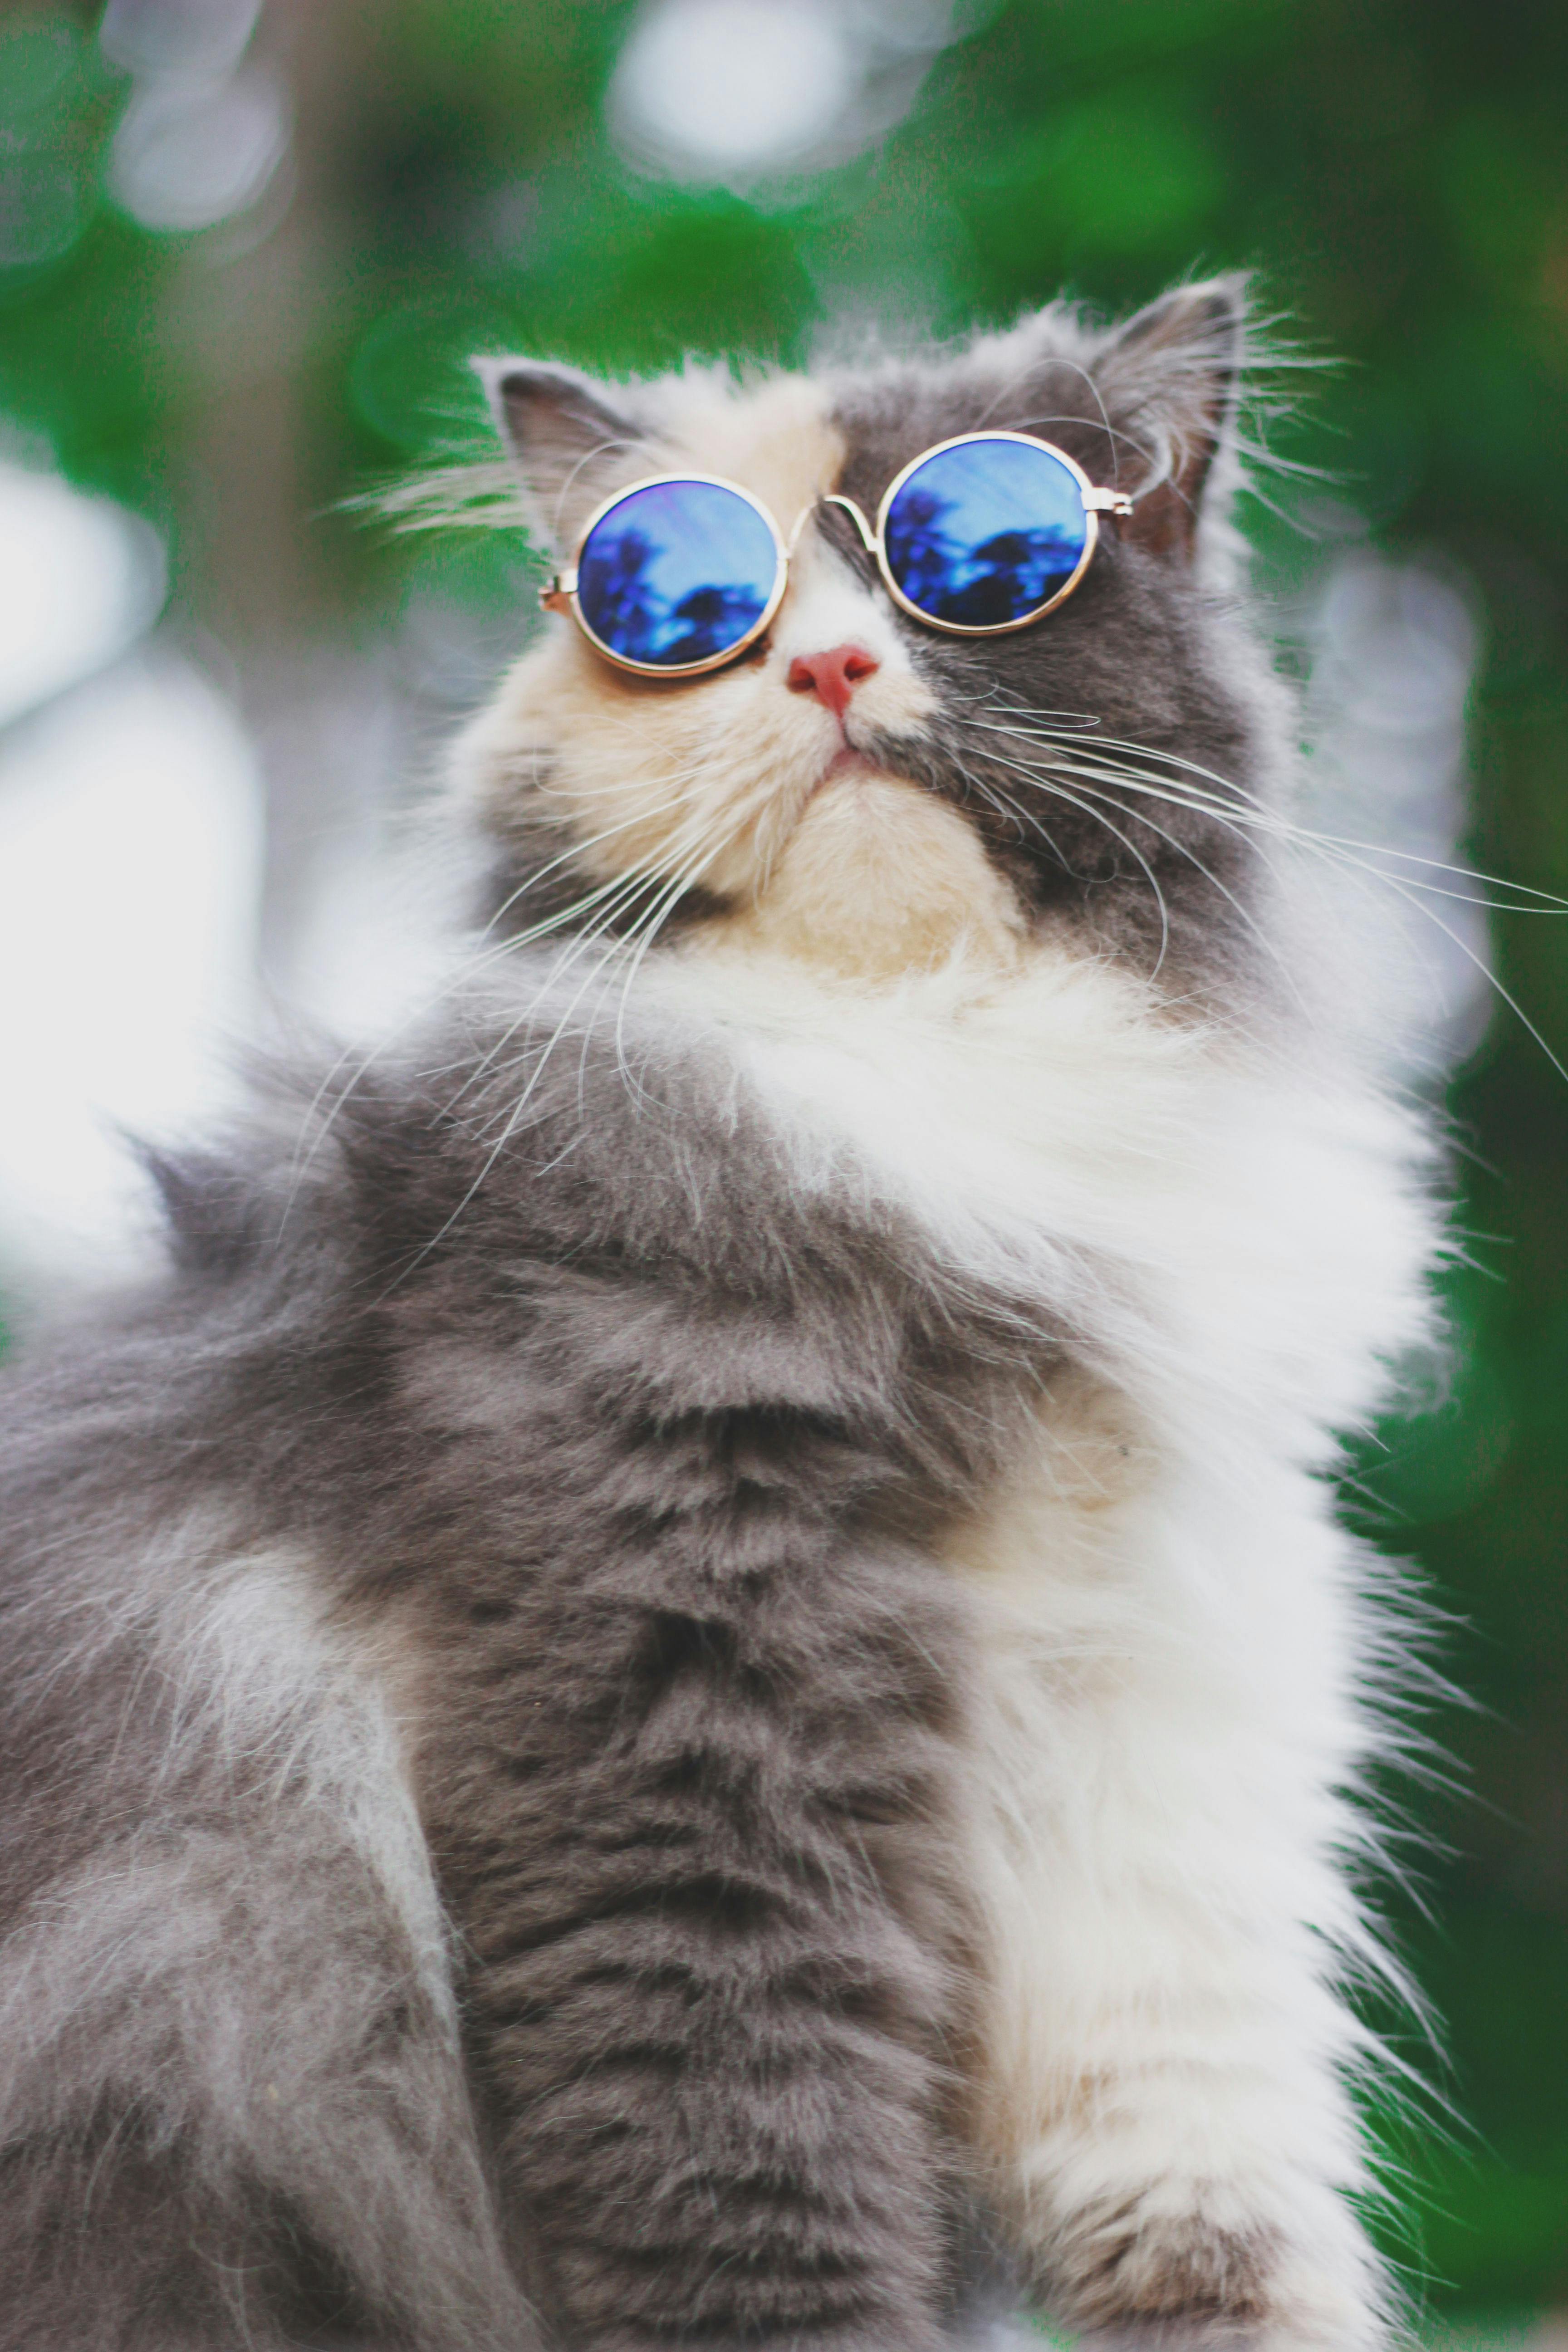 British longhair cat wearing sunglasses Photograph by Jean-Michel Labat -  Pixels